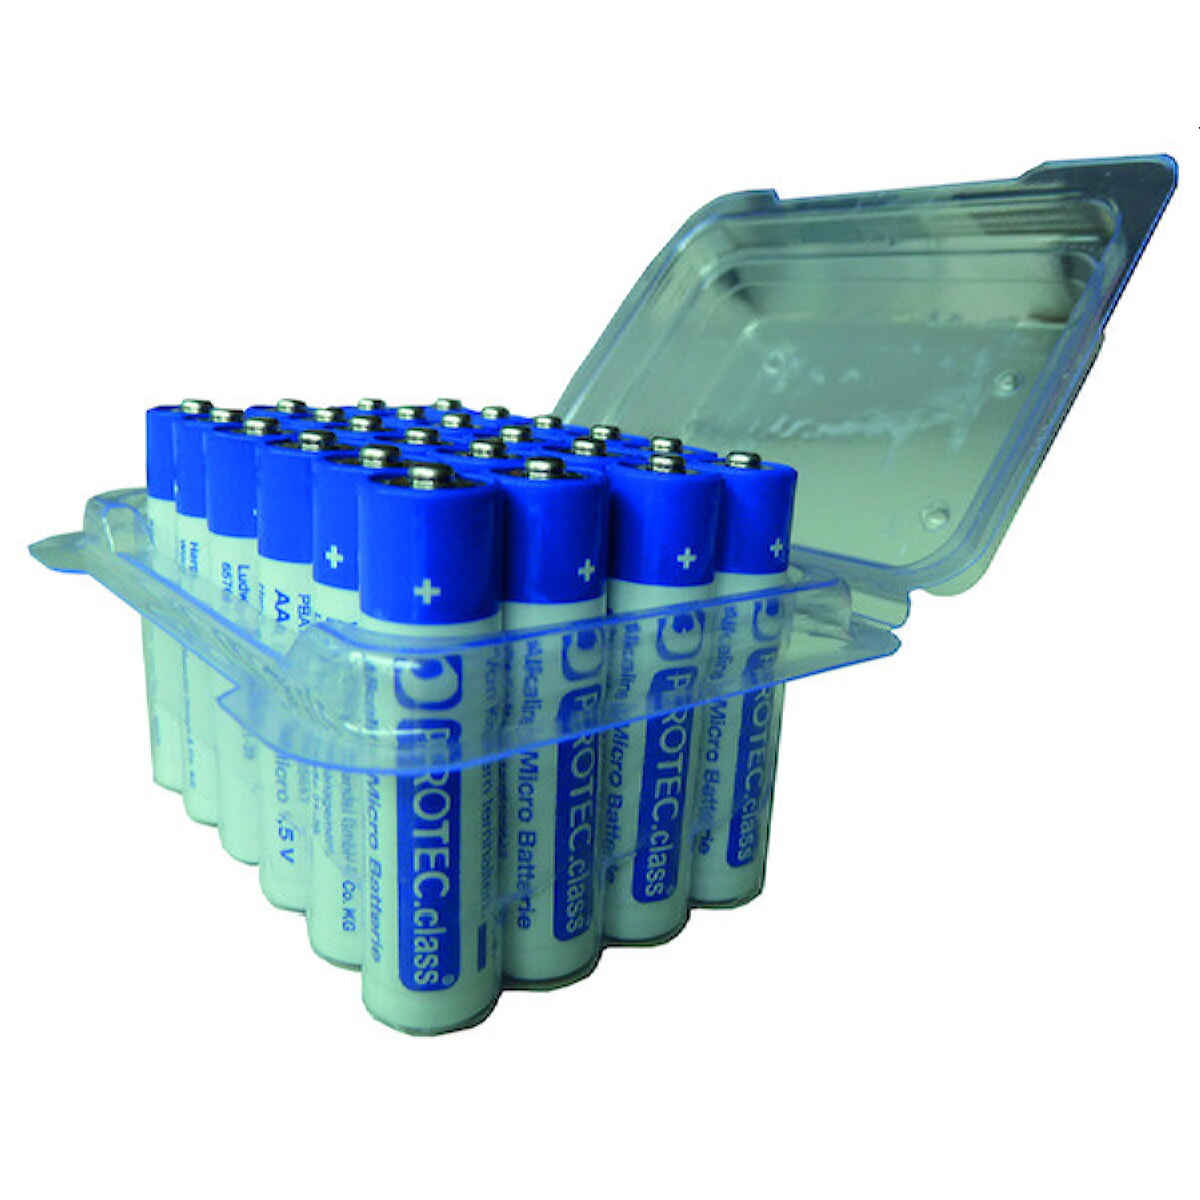 PROT Batterie PBAT AAA Micro 24er Blister (MHD) 05105643